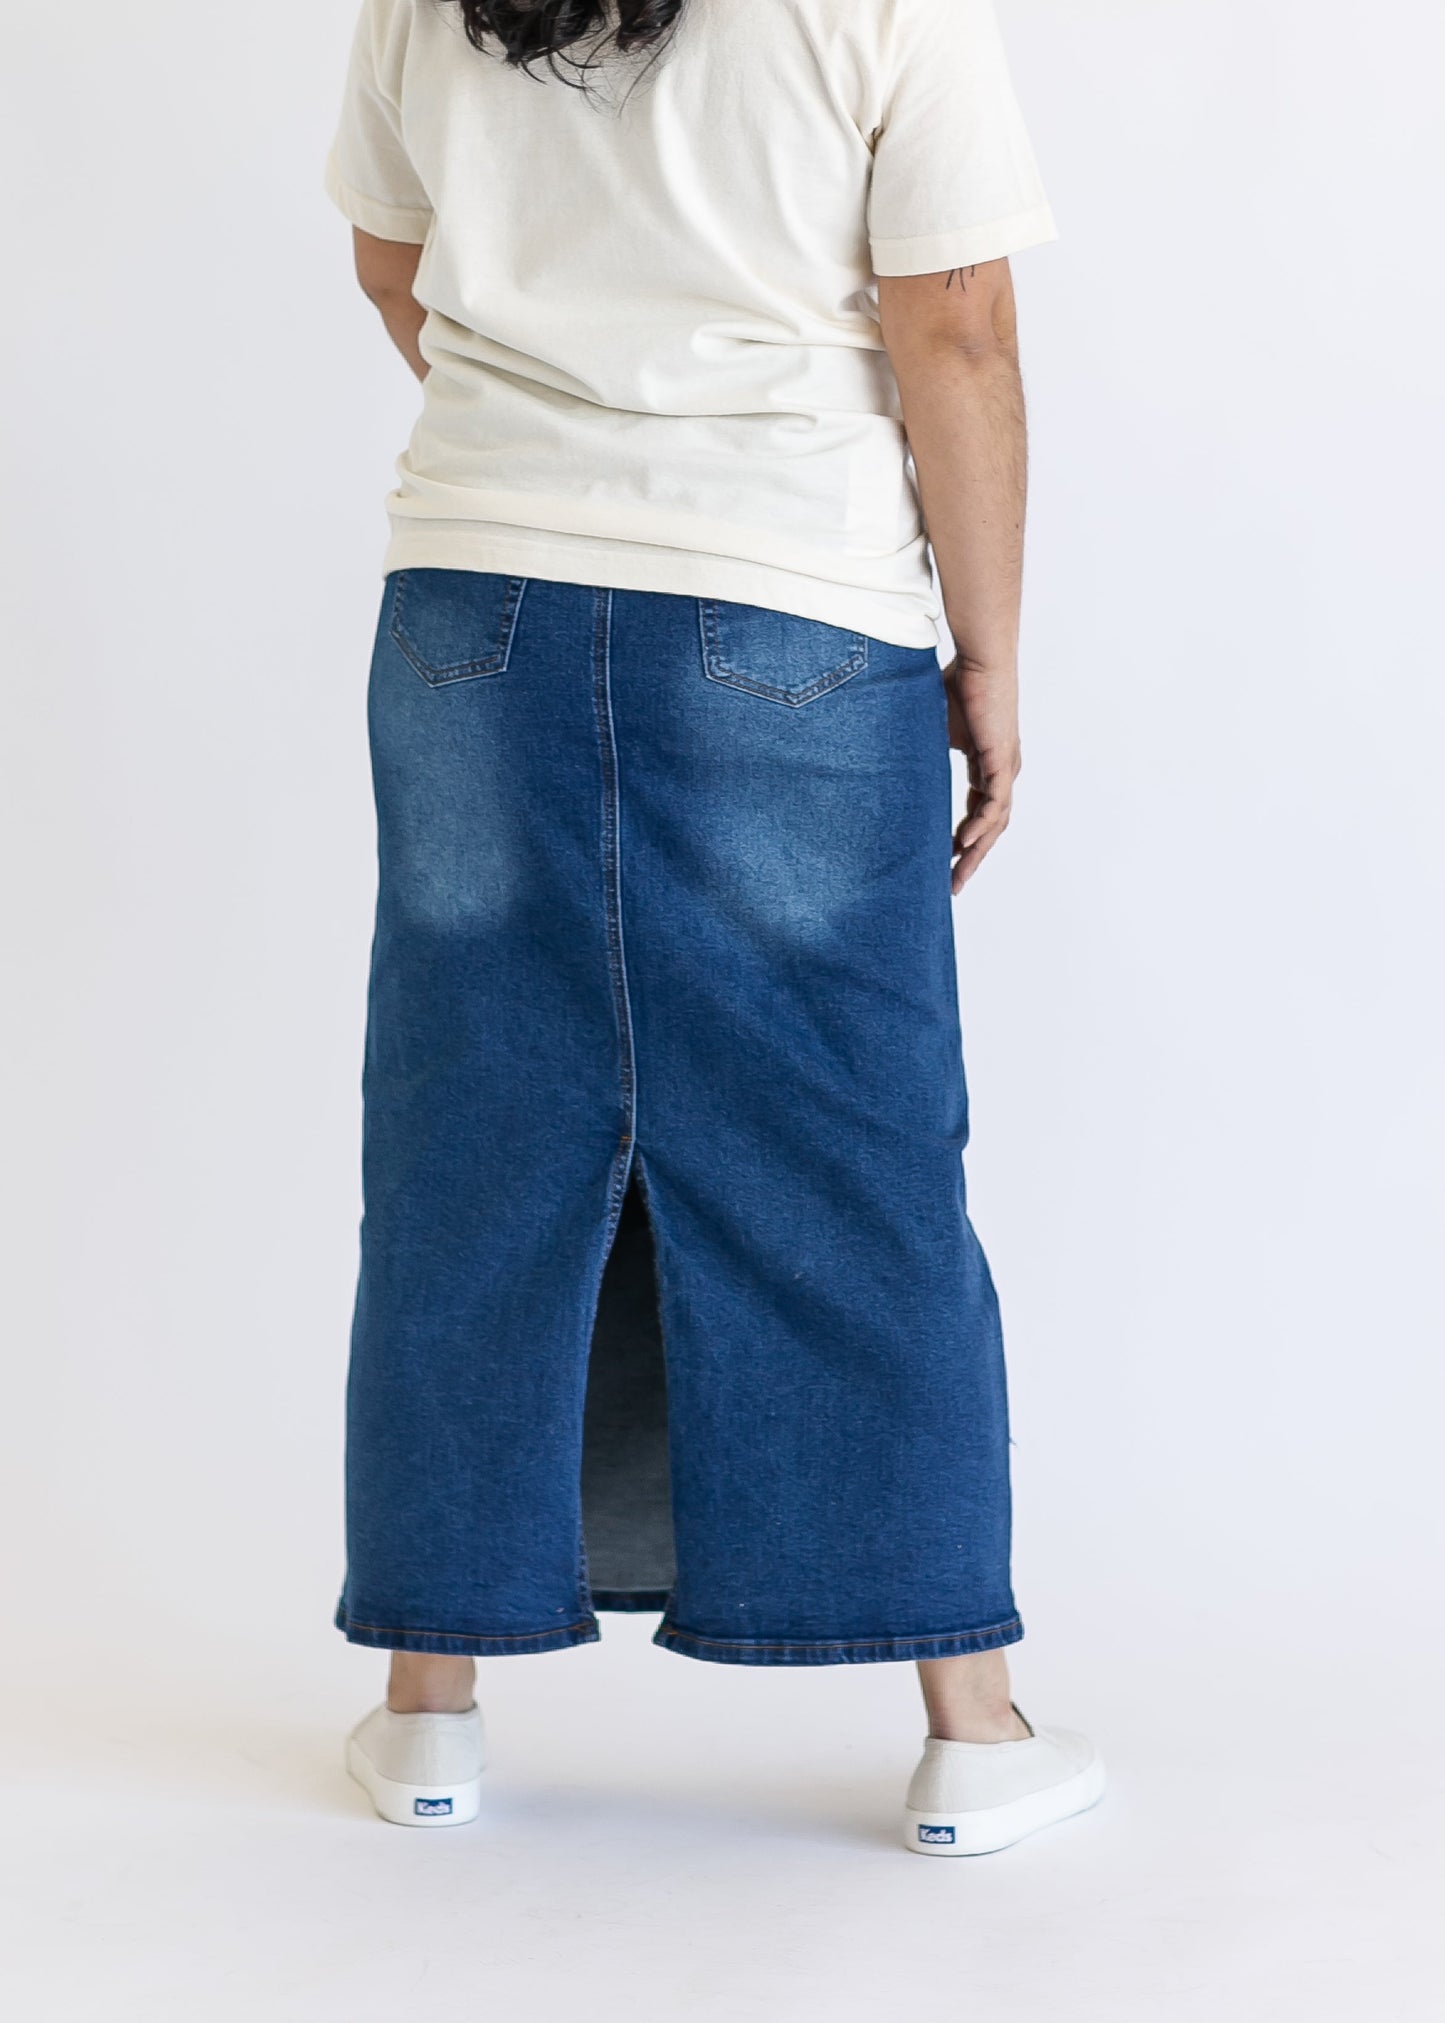 Reece Maternity Long Denim Skirt IC Skirts